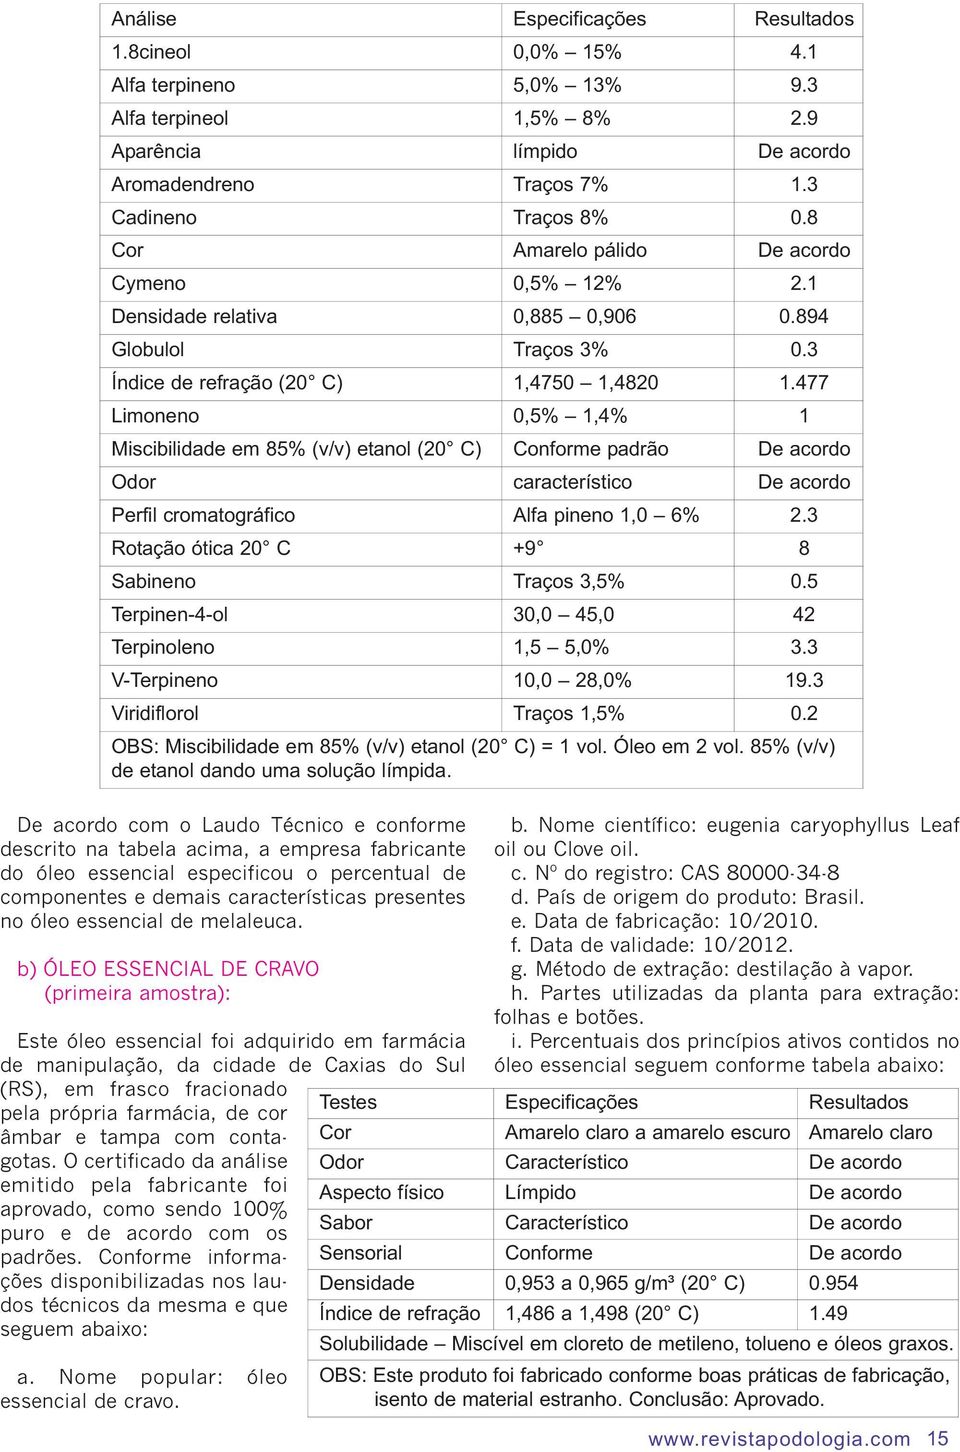 477 Limoneno 0,5% 1,4% 1 Miscibilidade em 85% (v/v) etanol (20 C) Conforme padrão De acordo Odor característico De acordo Perfil cromatográfico Alfa pineno 1,0 6% 2.